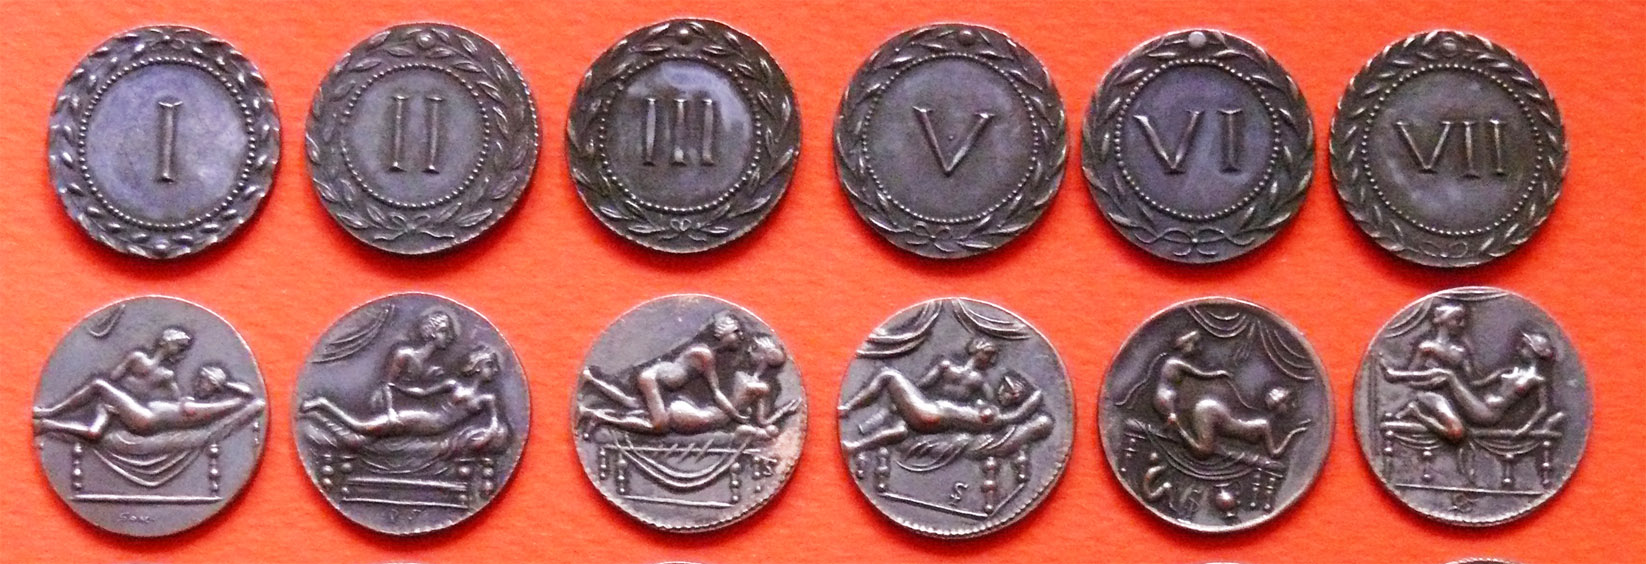 monete-spintria bordelli romani